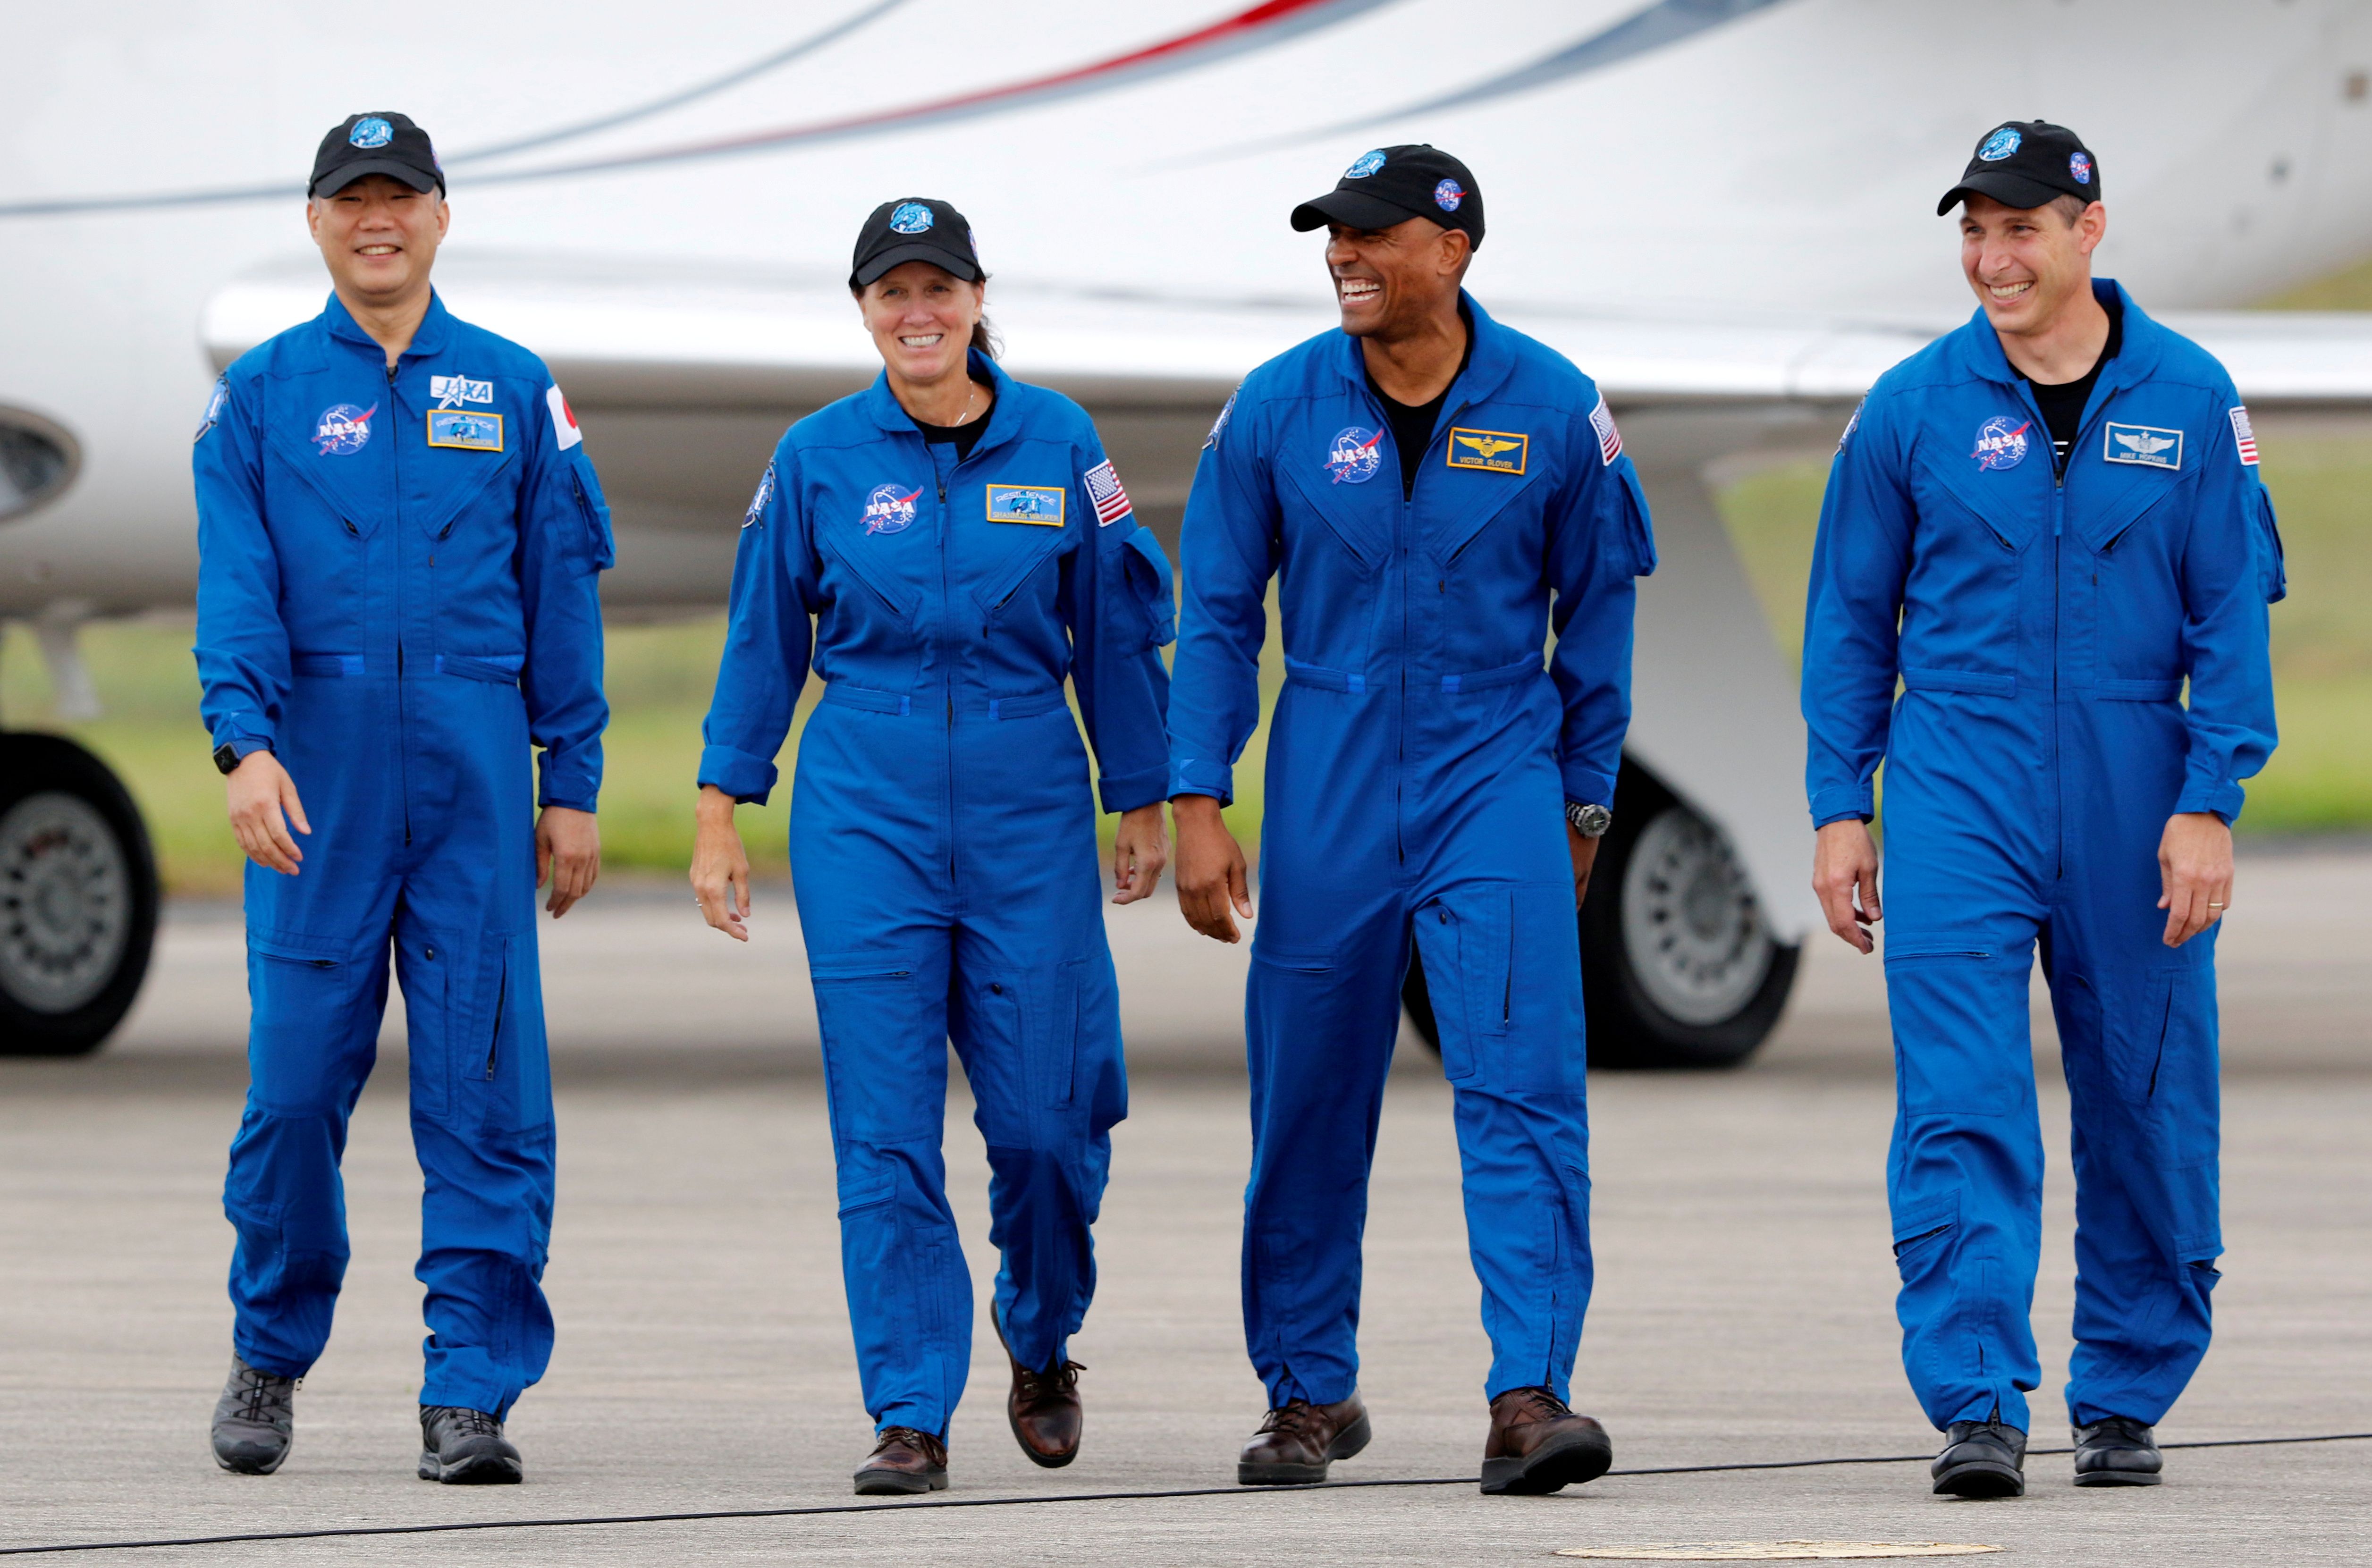 Los astronautas de la NASA Shannon Walker, Victor Glover, Mike Hopkins, y el astronauta de la JAXA (Agencia de Exploración Aeroespacial de Japón) Soichi Noguchi, que forman la Tripulación 1, caminan en el Centro Espacial Kennedy antes del lanzamiento de la primera misión comercial de la tripulación de la NASA/SpaceX en Cabo Cañaveral, Florida, EE.UU